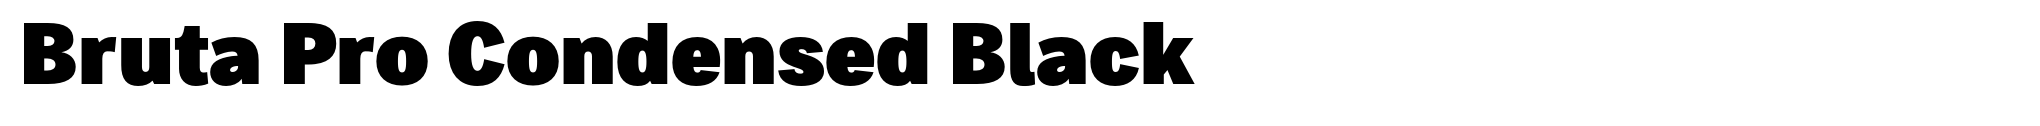 Bruta Pro Condensed Black image